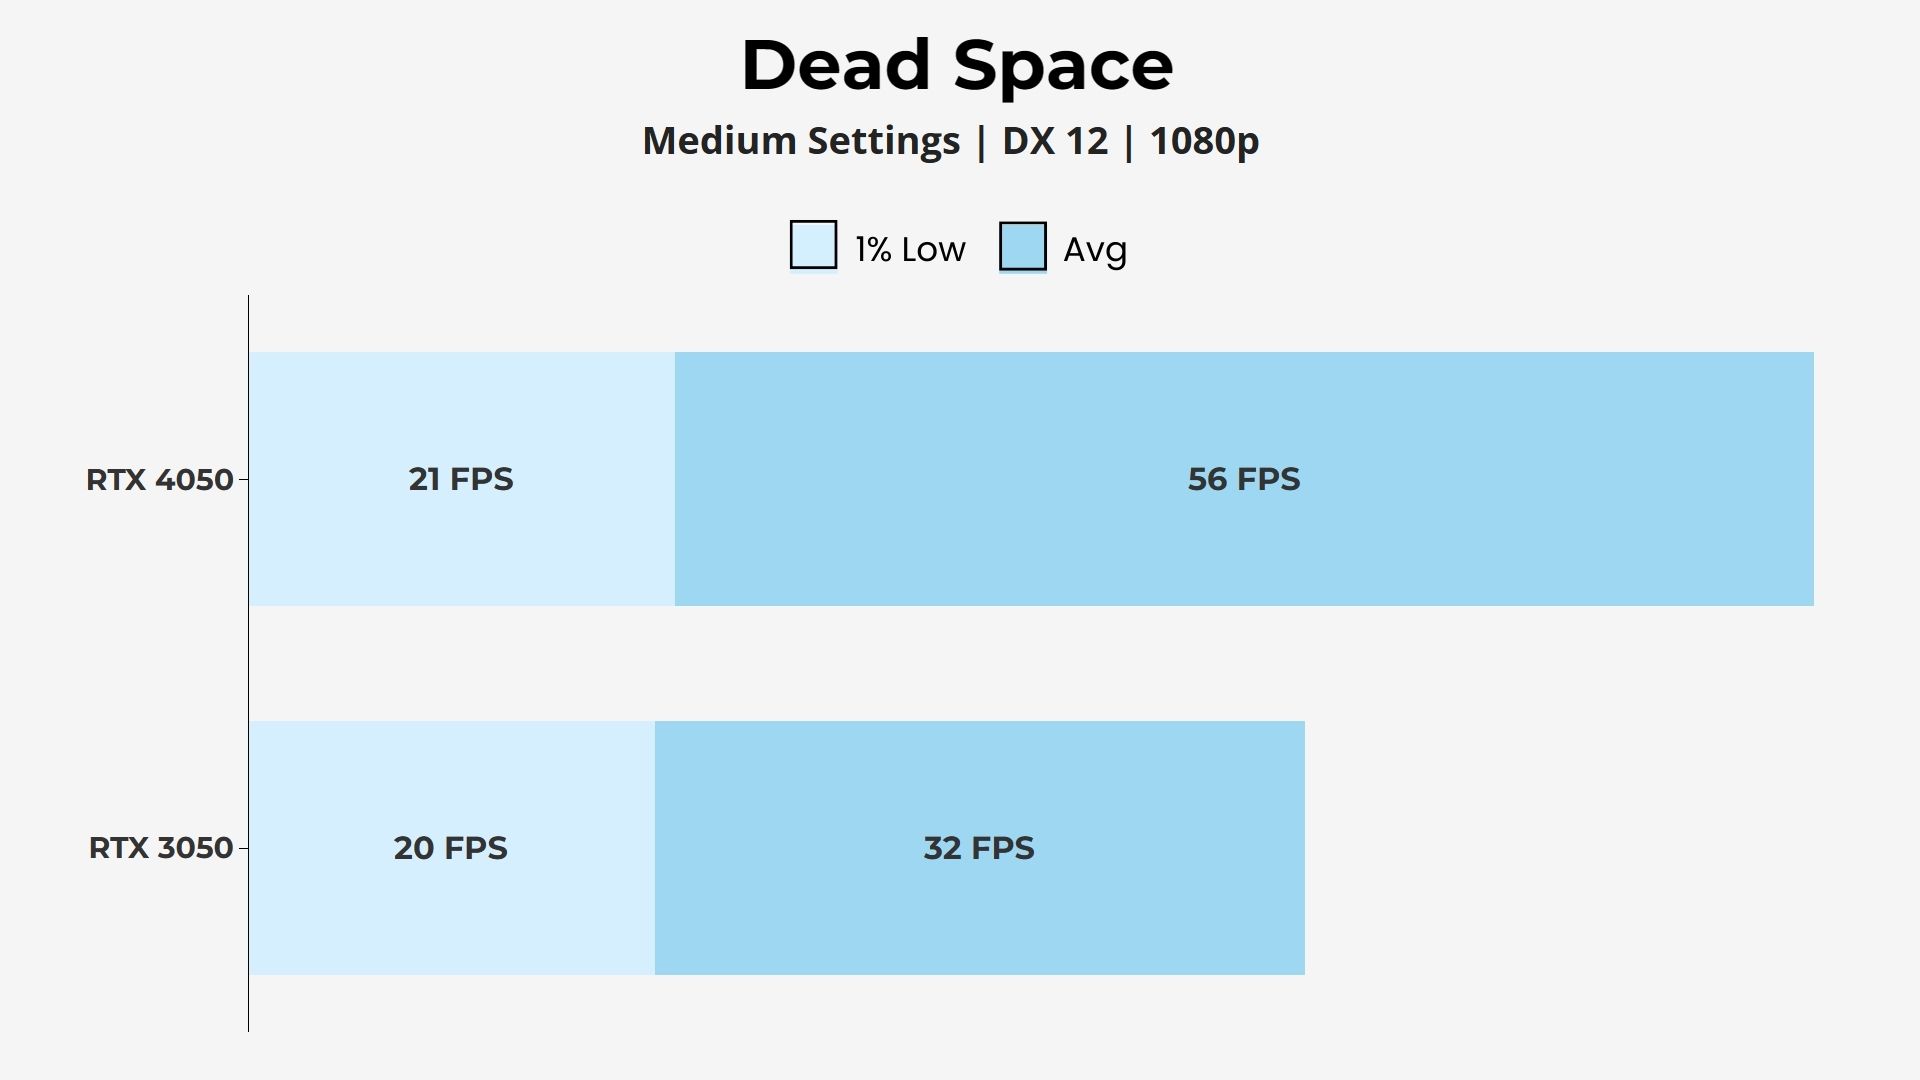 RTX 4050 vs 3050 Dead Space